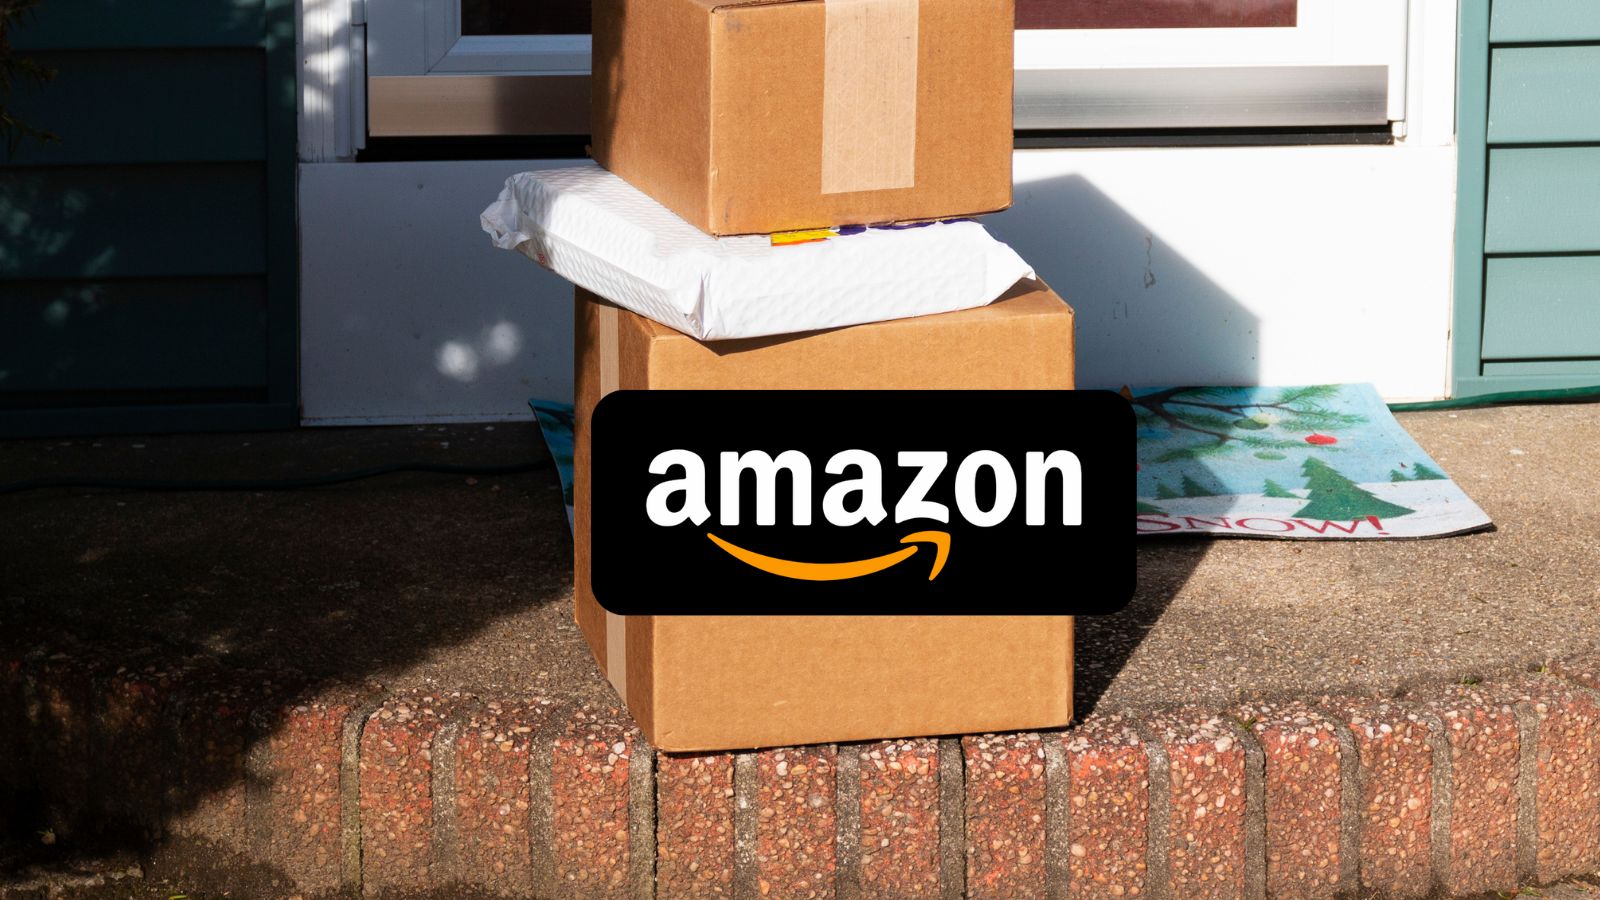 Amazon IMPAZZISCE con sconti del 90% che distruggono Unieuro